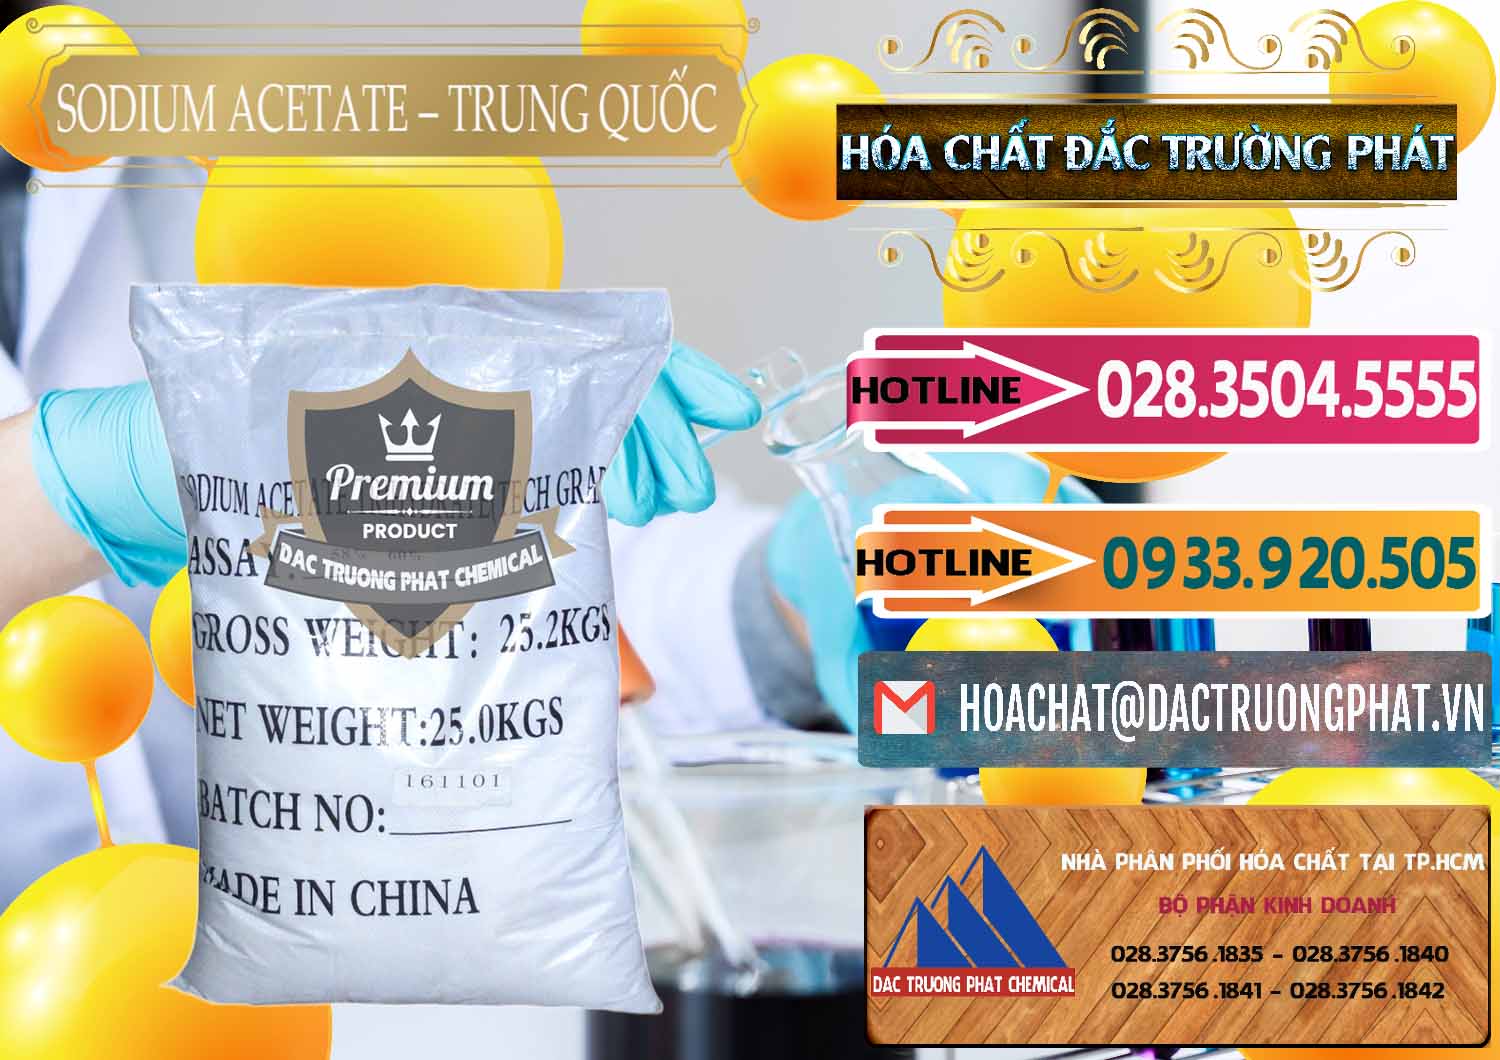 Công ty chuyên cung cấp & bán Sodium Acetate - Natri Acetate Trung Quốc China - 0134 - Nhà cung cấp và bán hóa chất tại TP.HCM - dactruongphat.vn